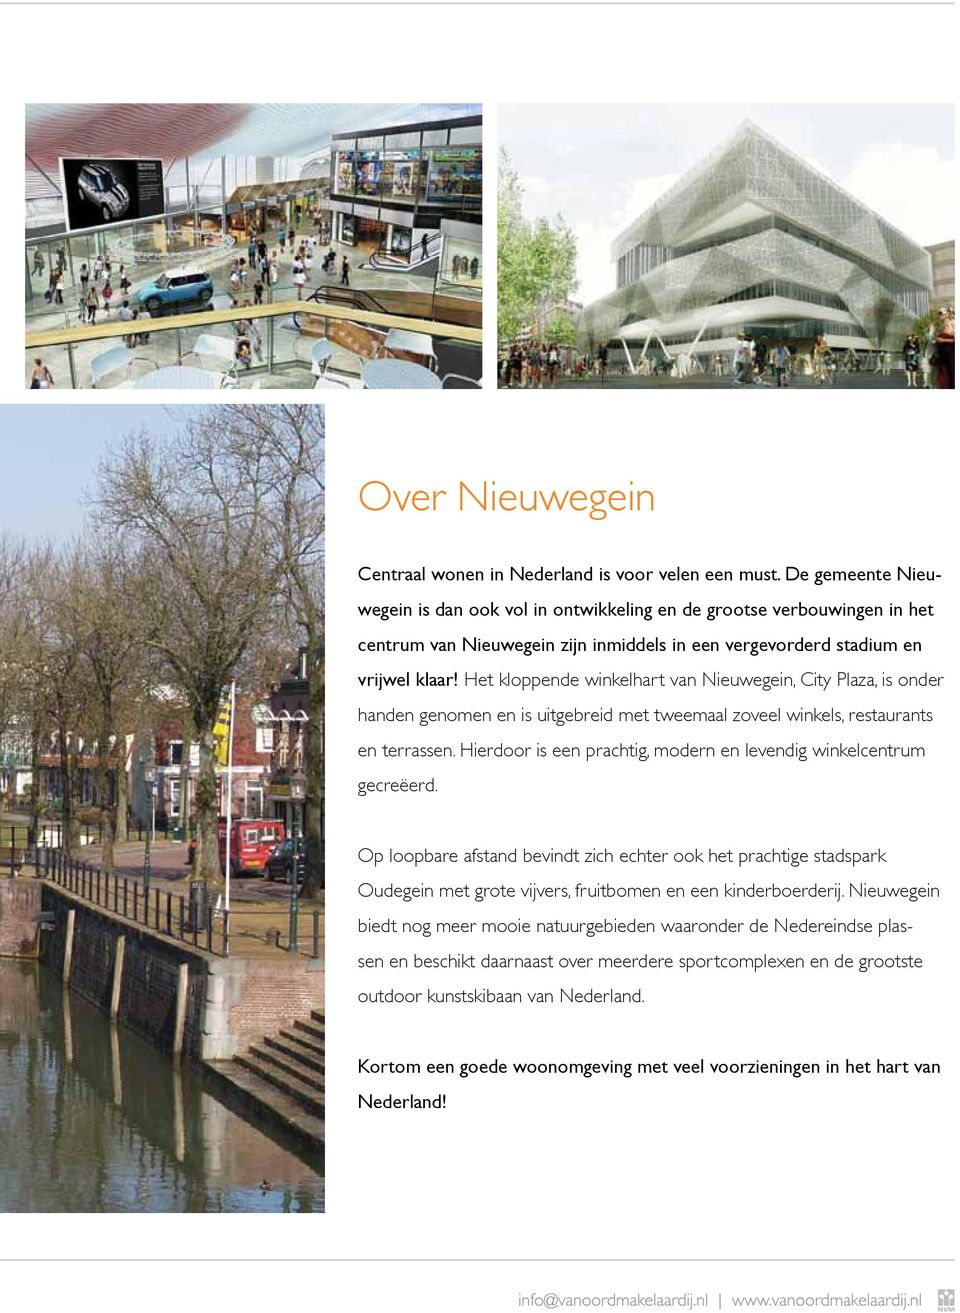 Het kloppende winkelhart van Nieuwegein, City Plaza, is onder handen genomen en is uitgebreid met tweemaal zoveel winkels, restaurants en terrassen.